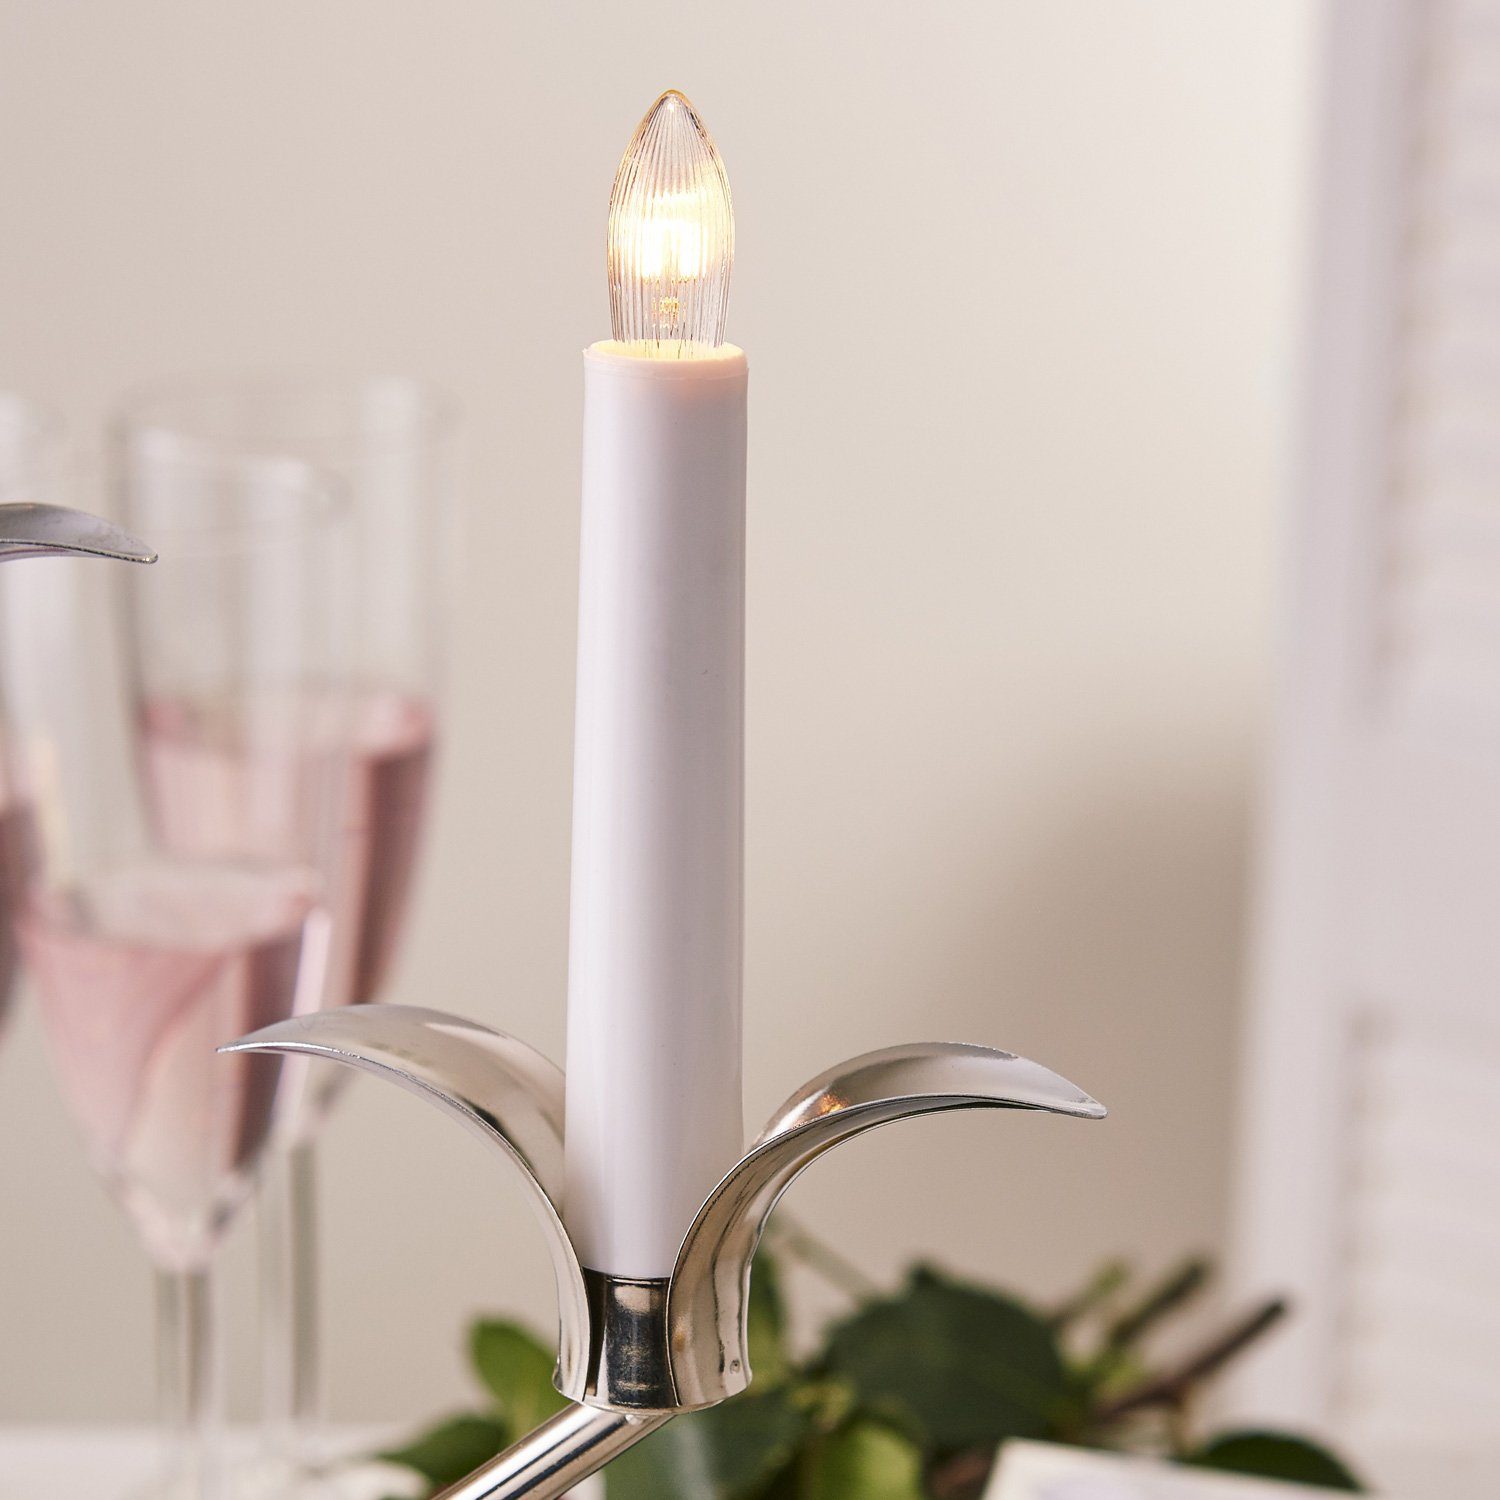 Kerzenleuchter Kerzenleuchter H:52cm TRADING STAR silber Best 5flammig Glühlampen E10 weiß Kerzenhalter Season